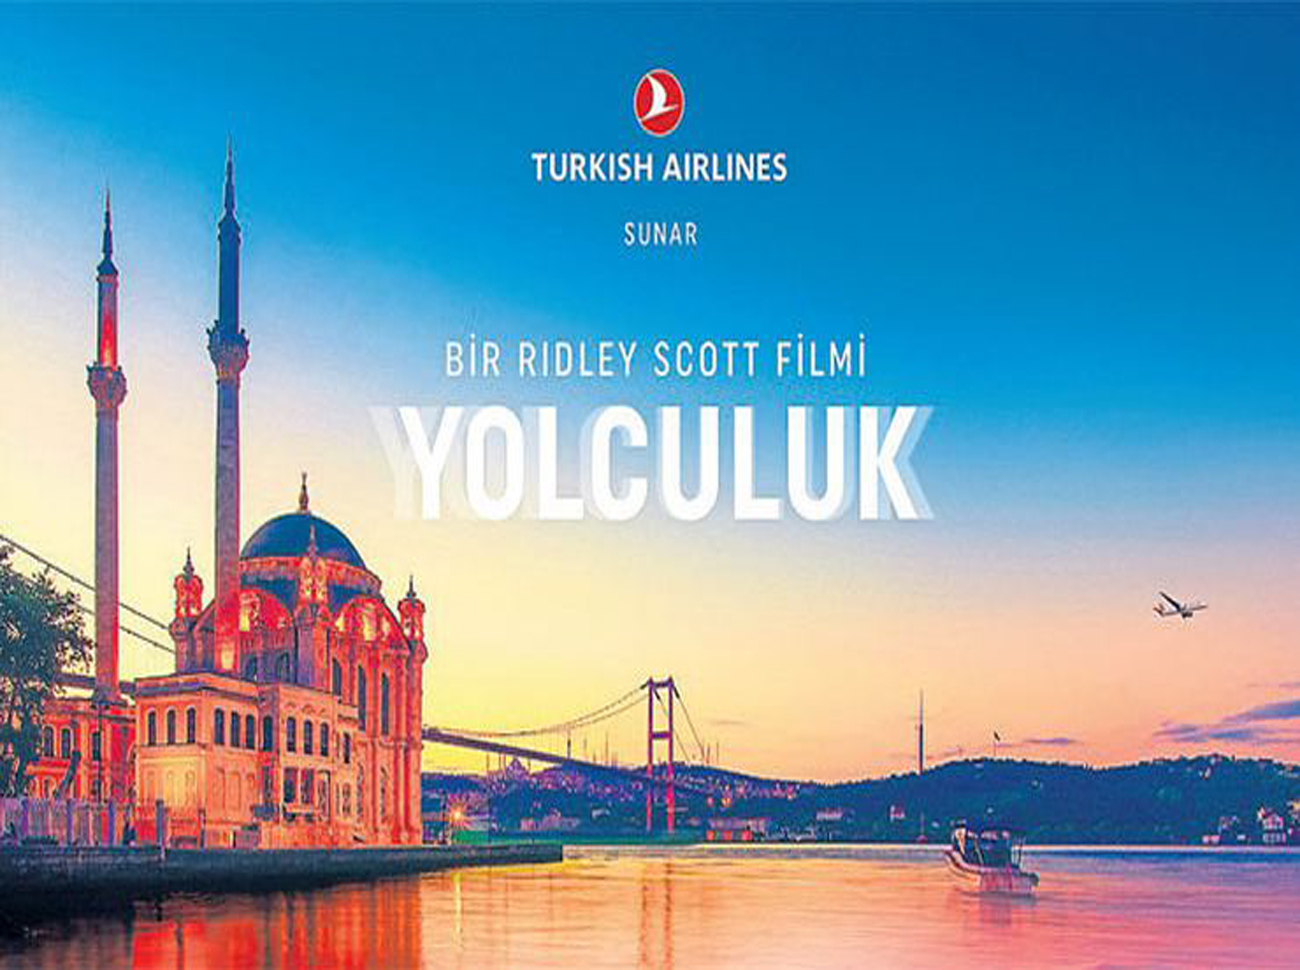 Türk Hava Yolları’ndan Ridley Scott İmzalı “Yolculuk” Filmi